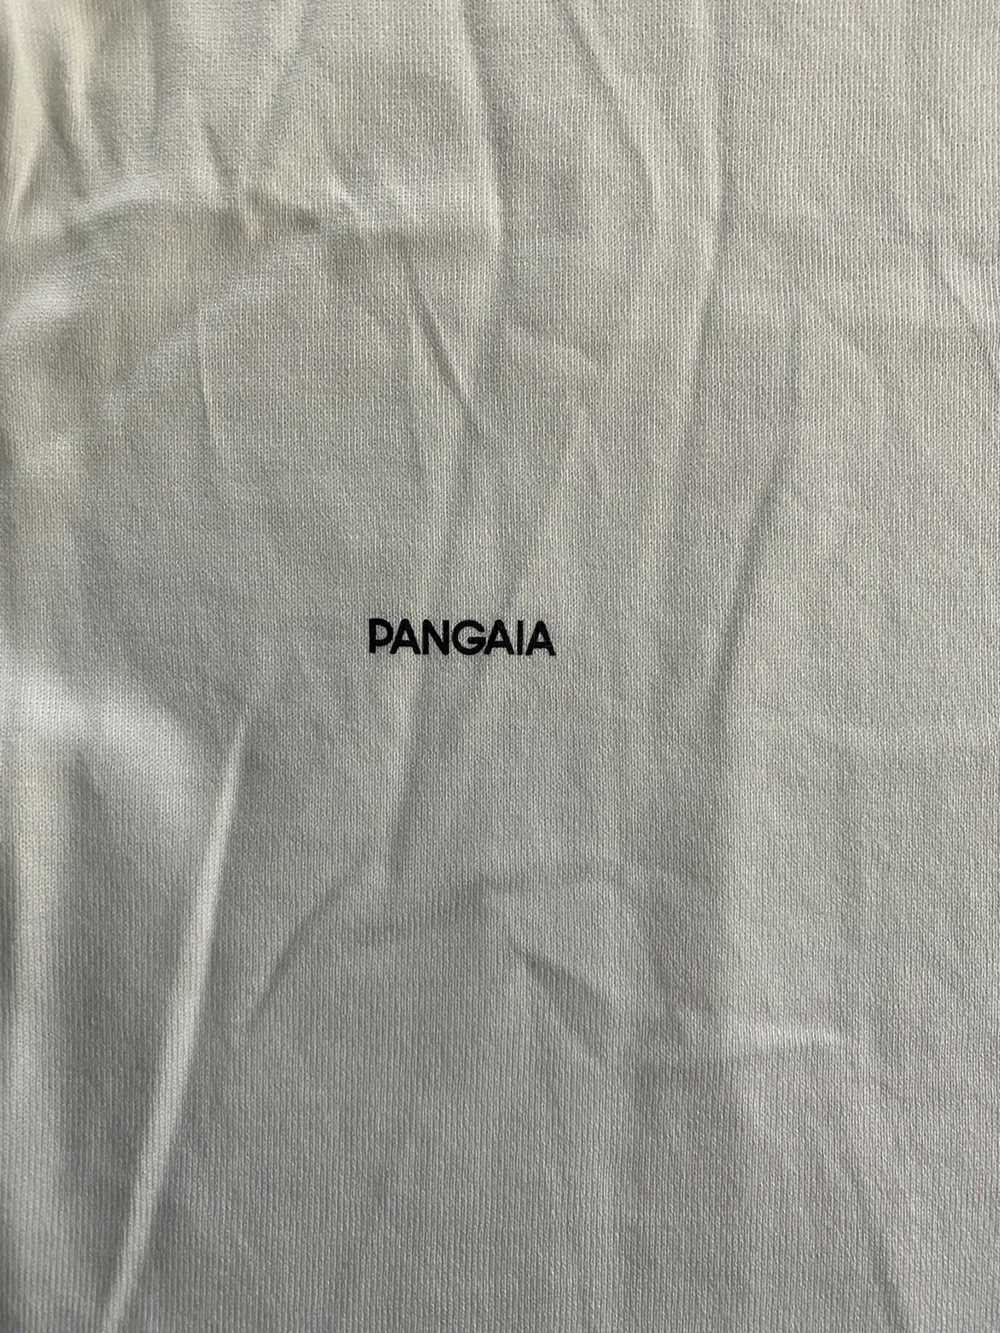 Pangaia Pangaia Organic White Cotton Tee - image 12